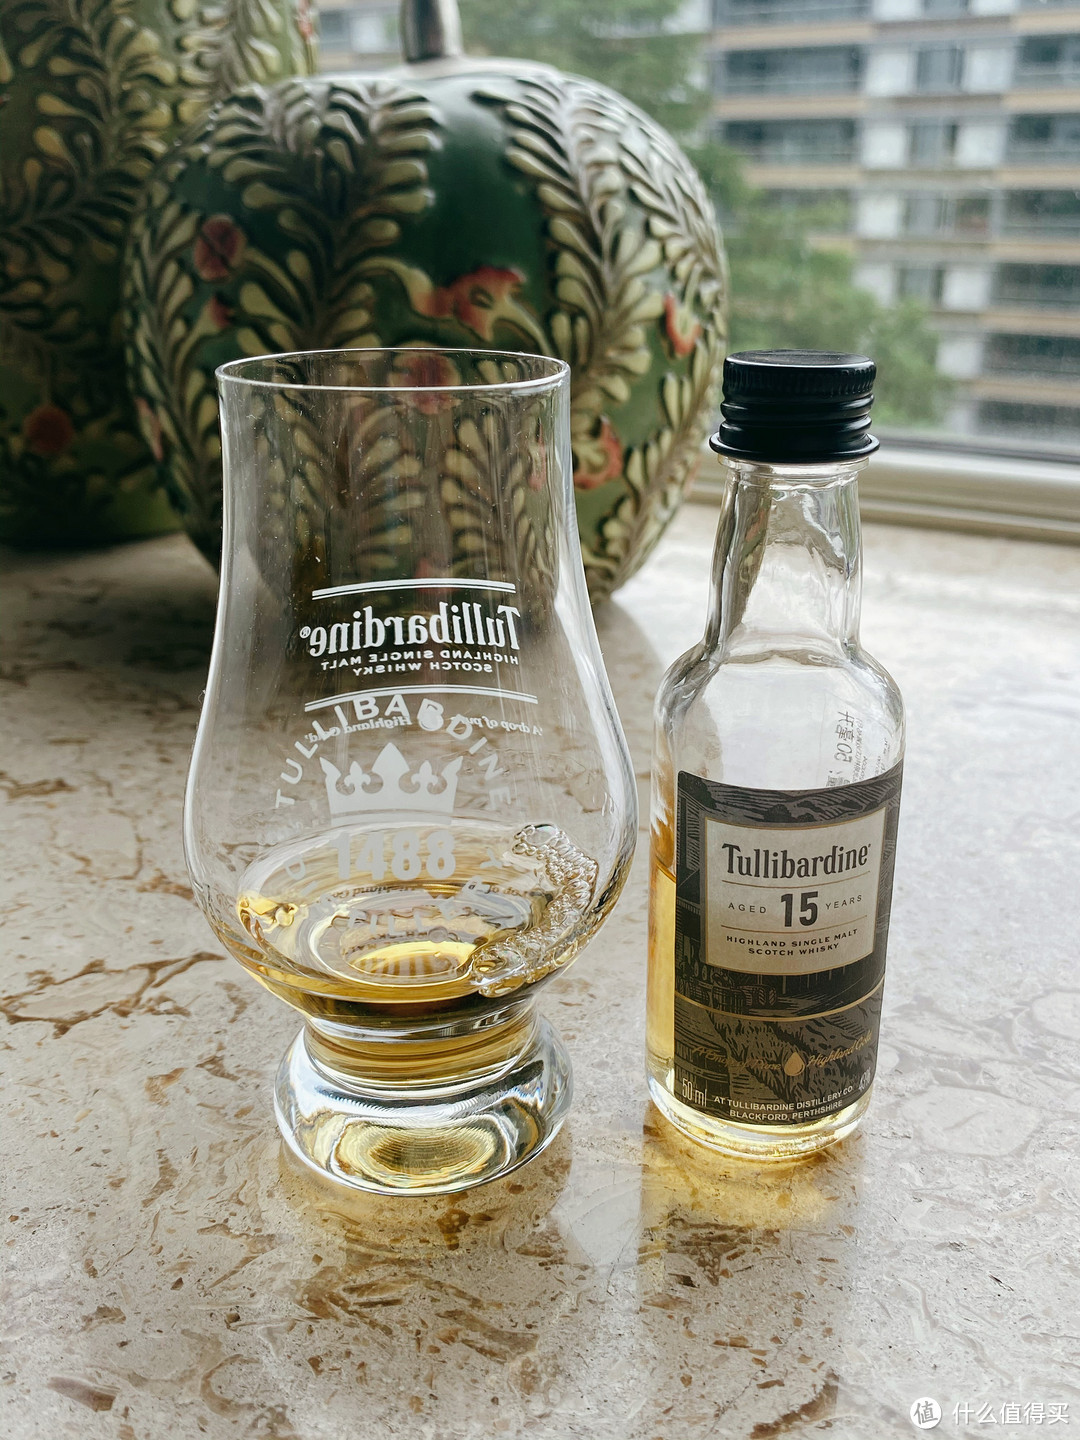 两款苏格兰高地优质威士忌横评——图里巴丁15年、高地女王14年🥃